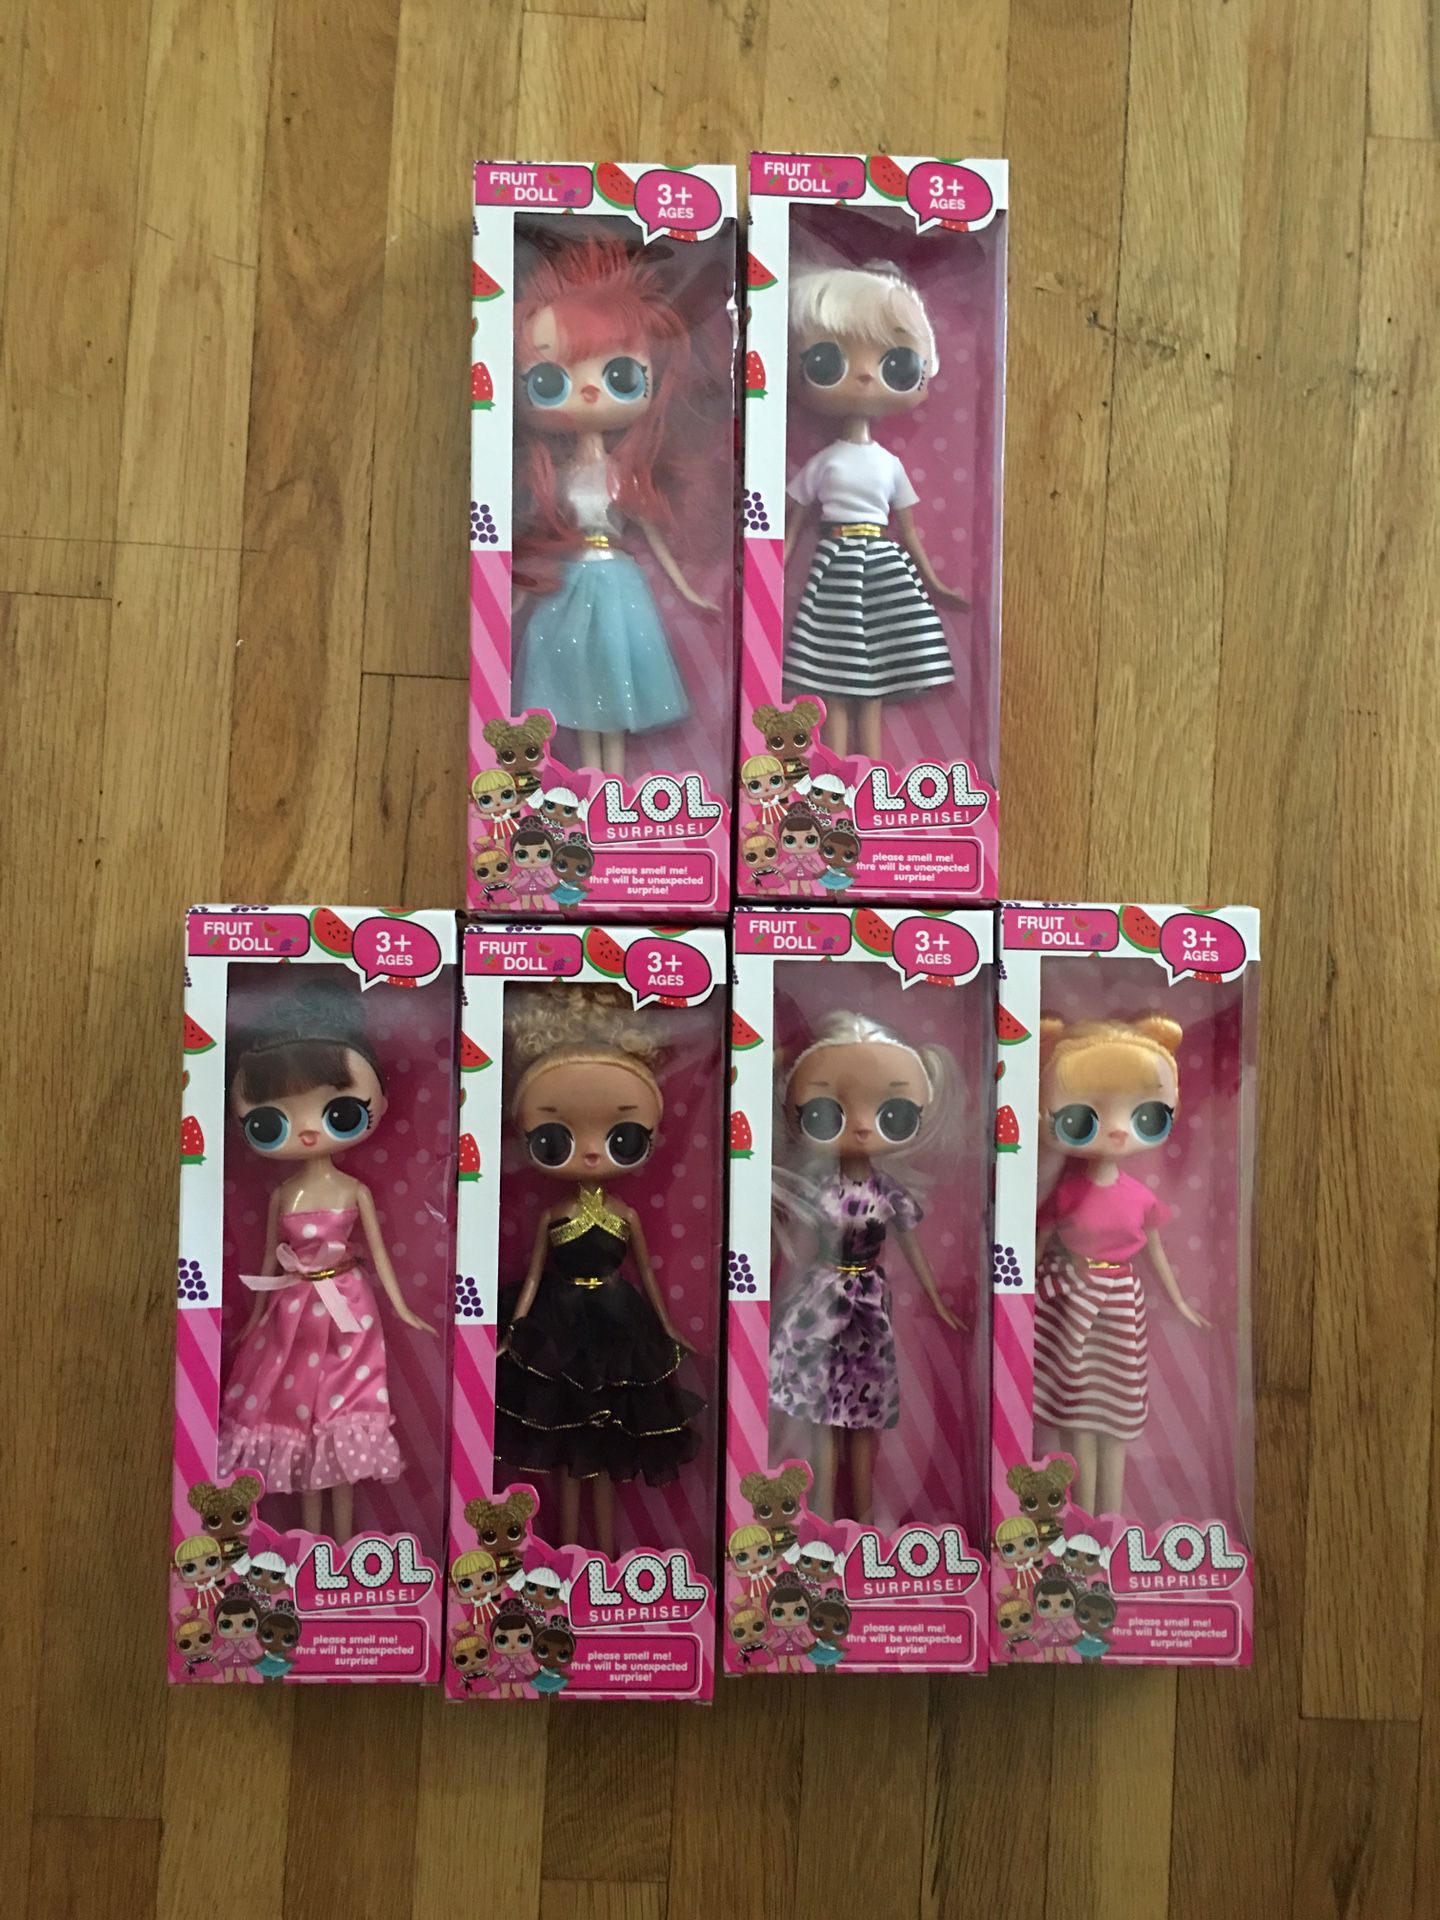 Lol surprise Barbie dolls